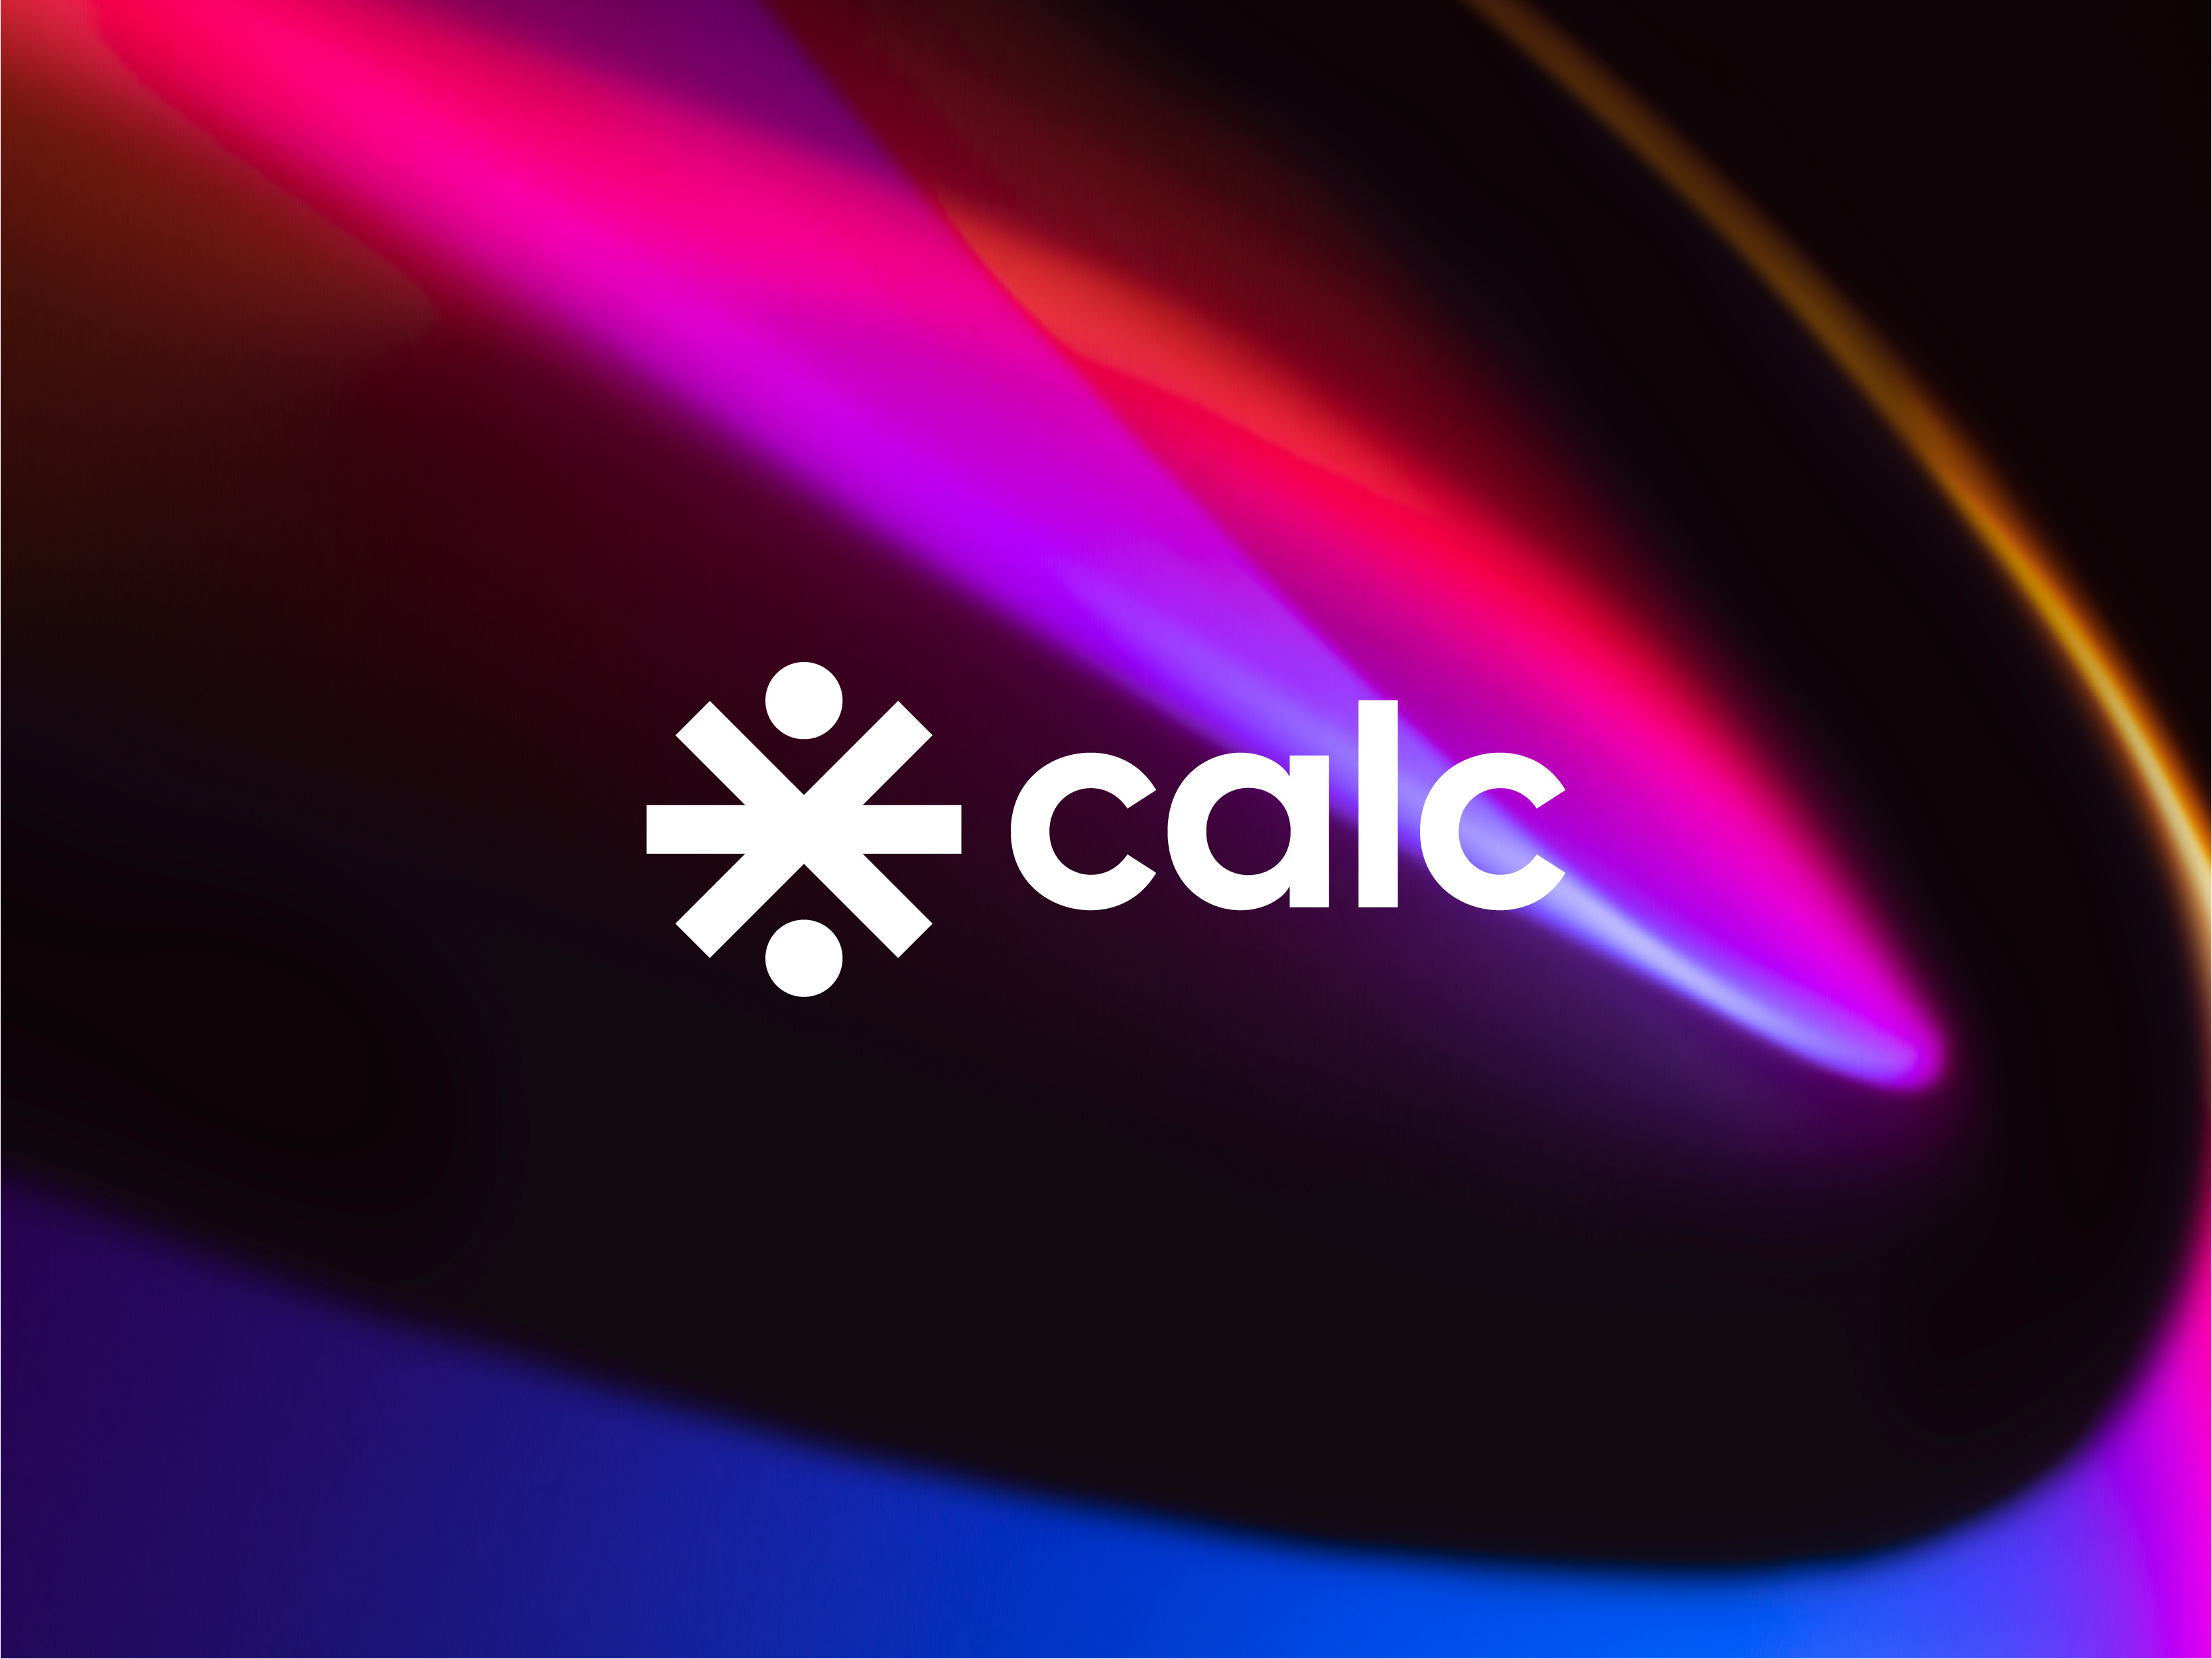 Calc Calculator Software Full Brand Identity Design